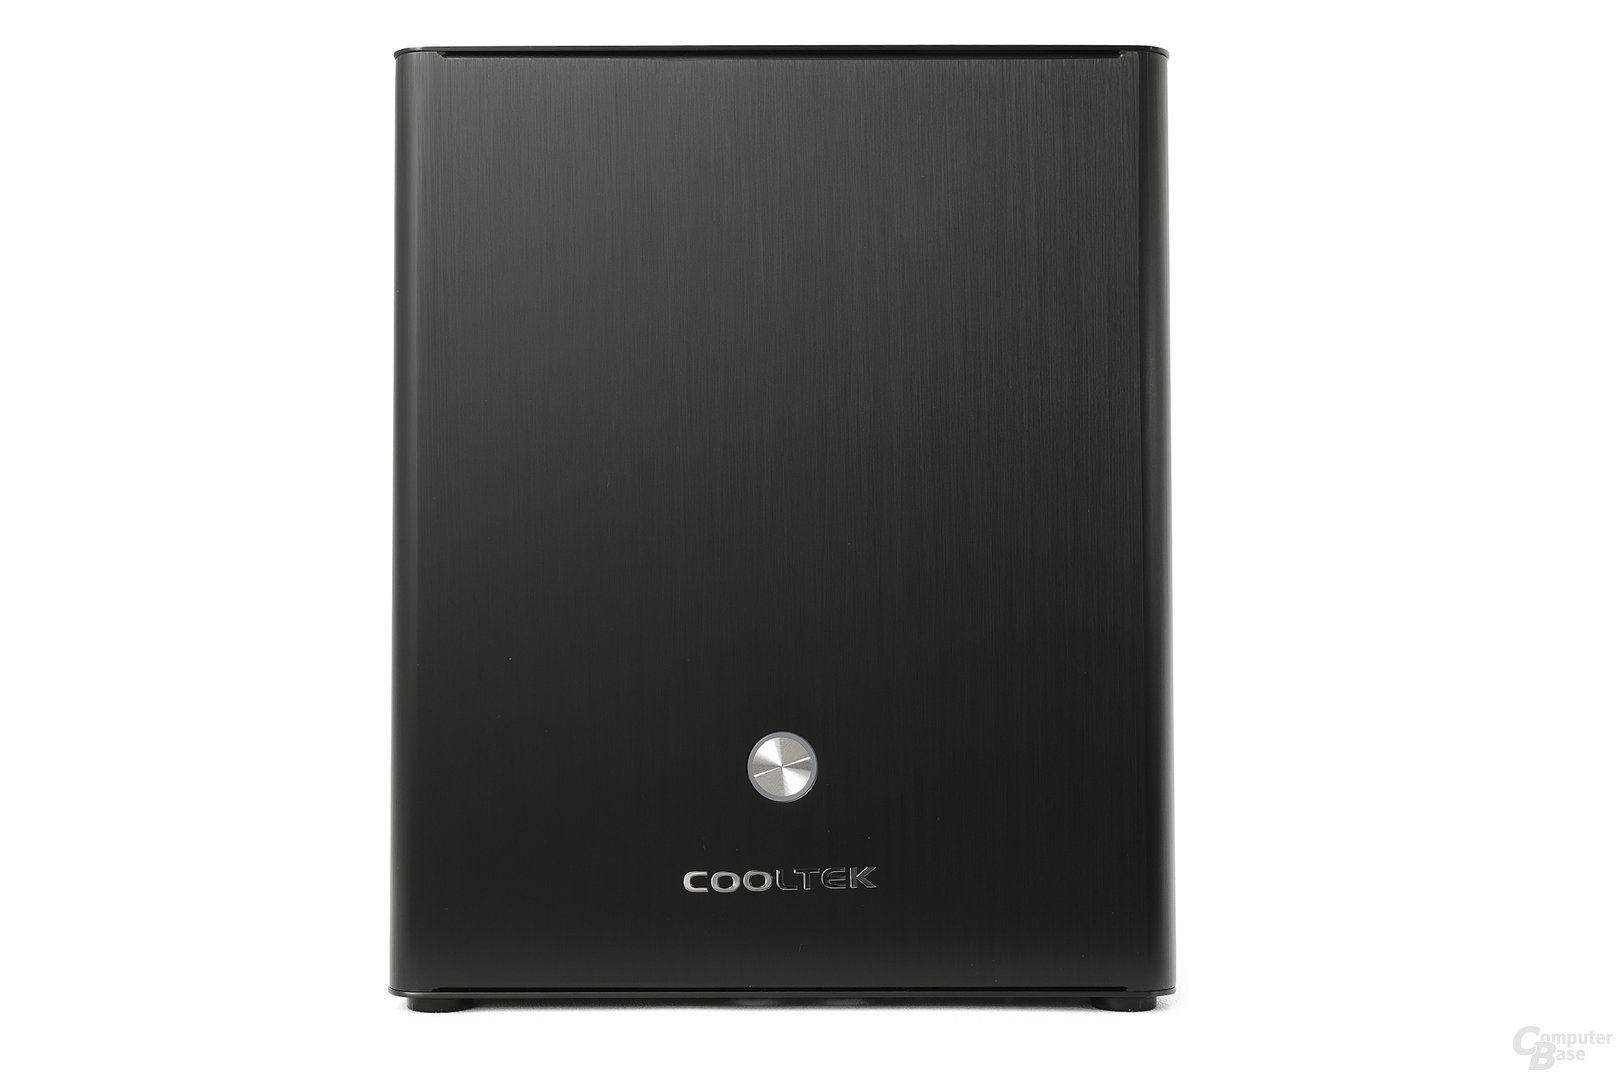 Cooltek Coolcube - Front